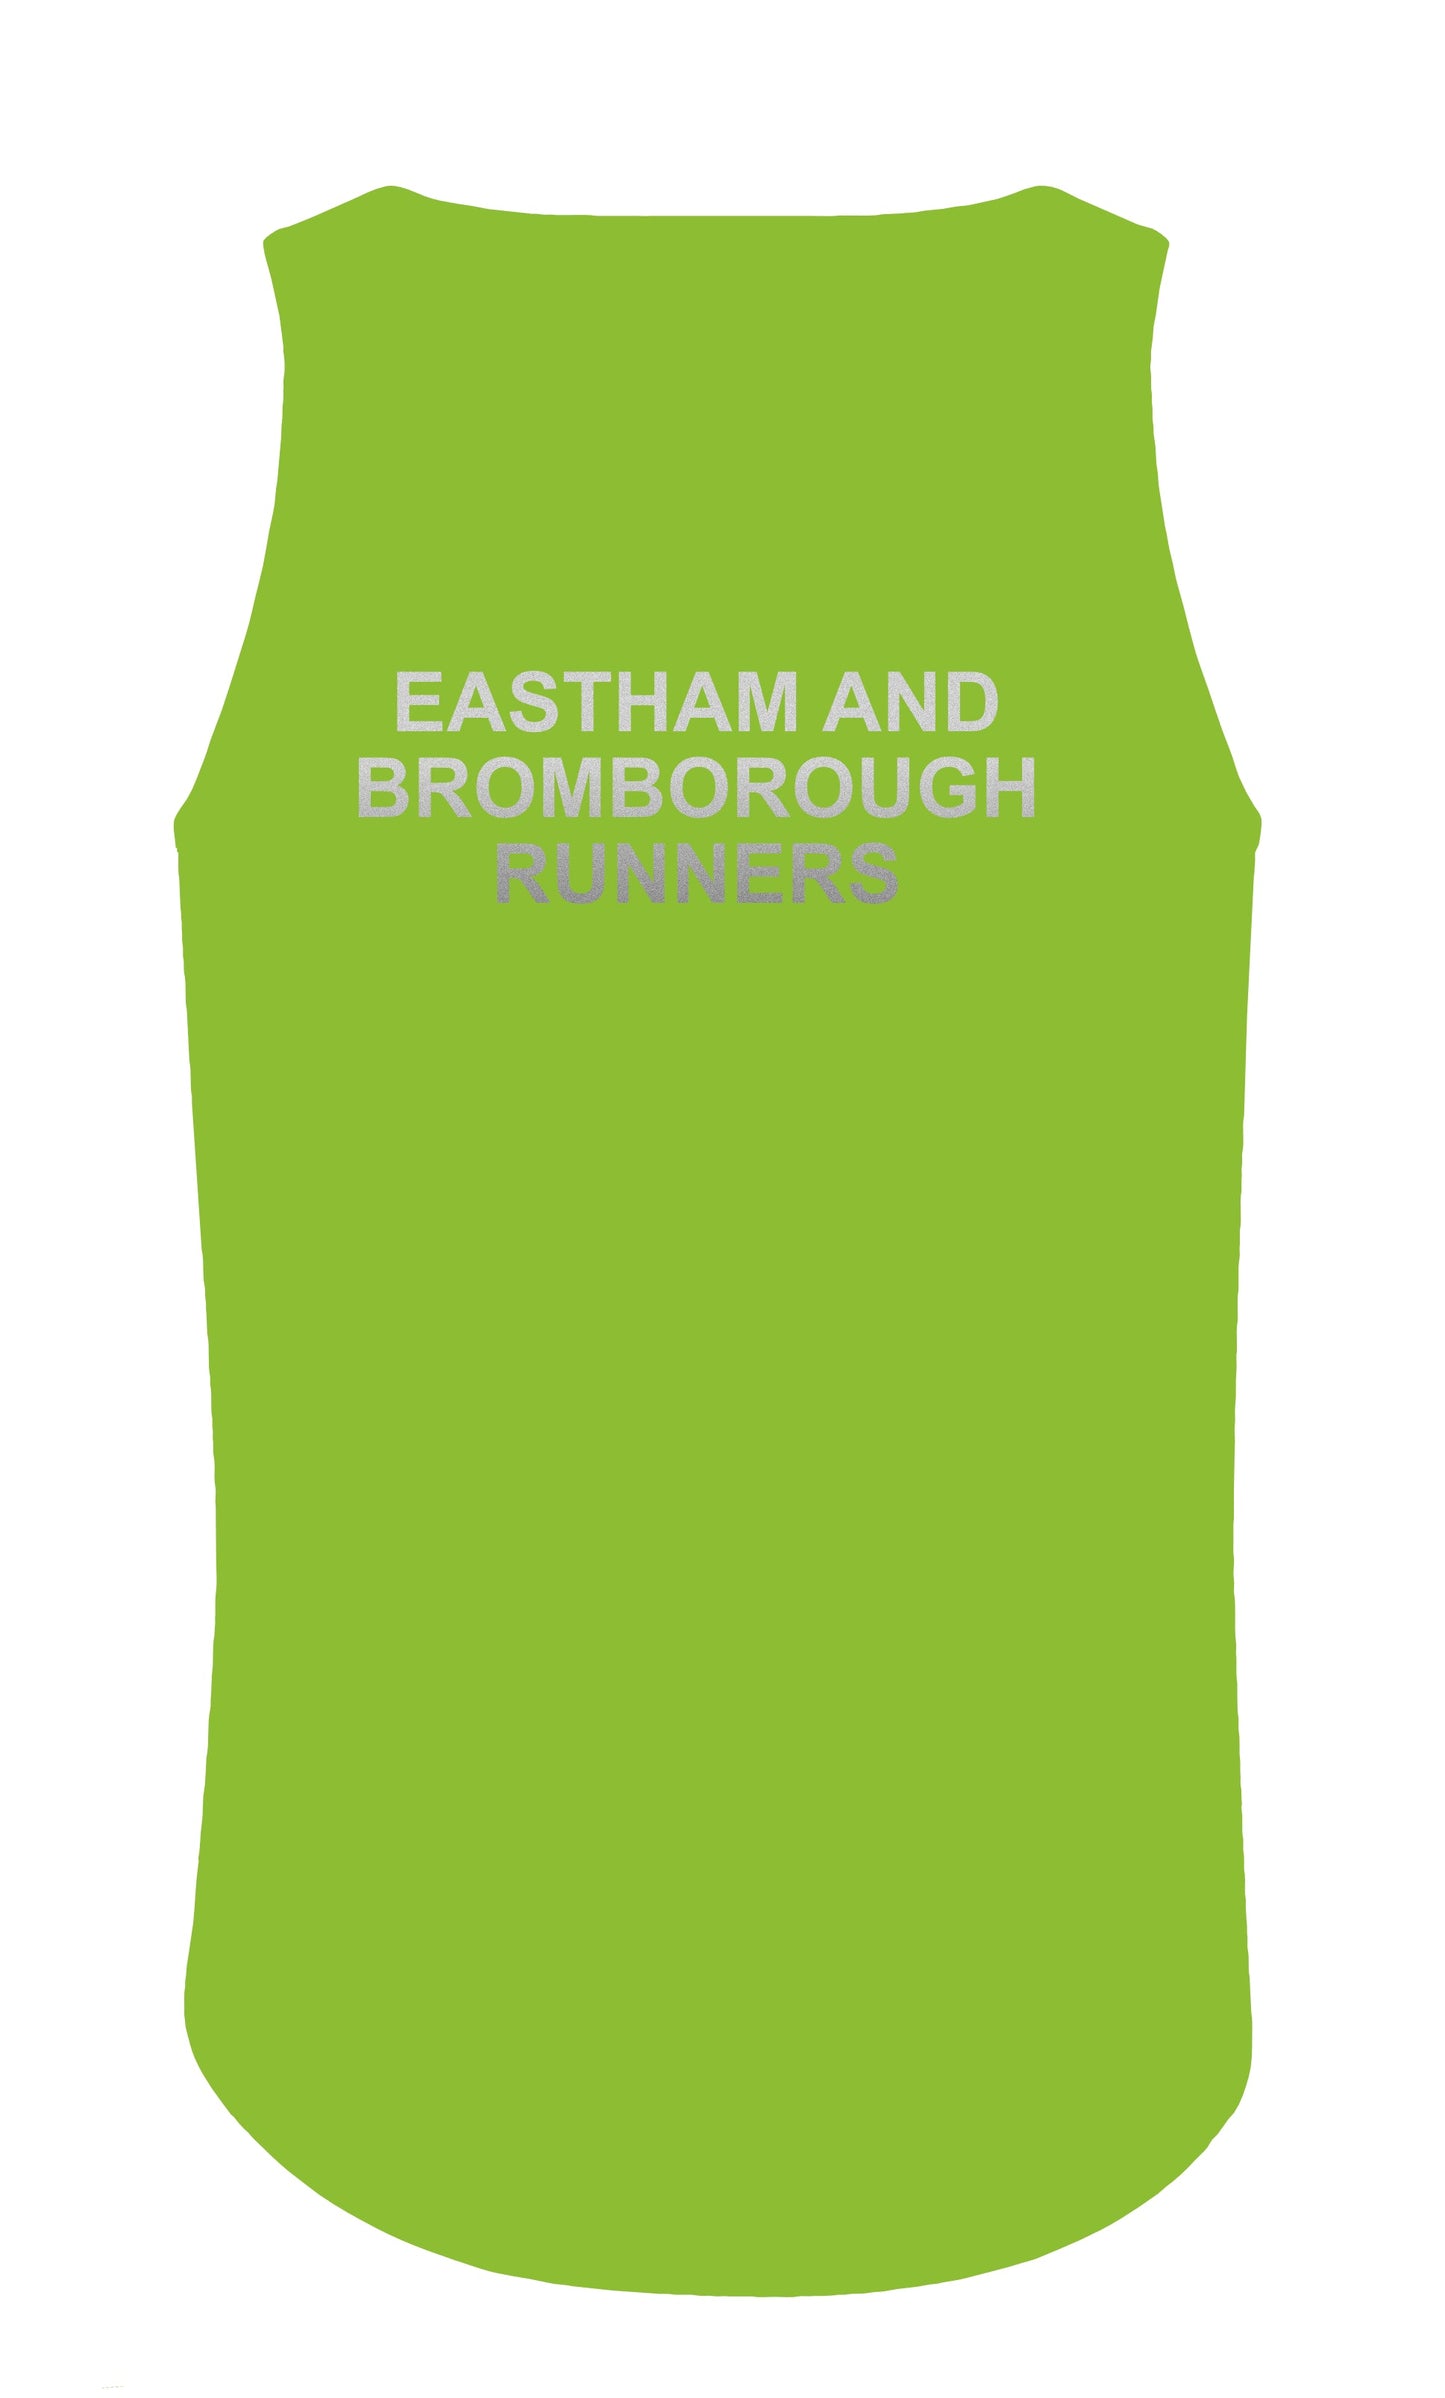 E&B Runners Mens Hi-Vis Vest